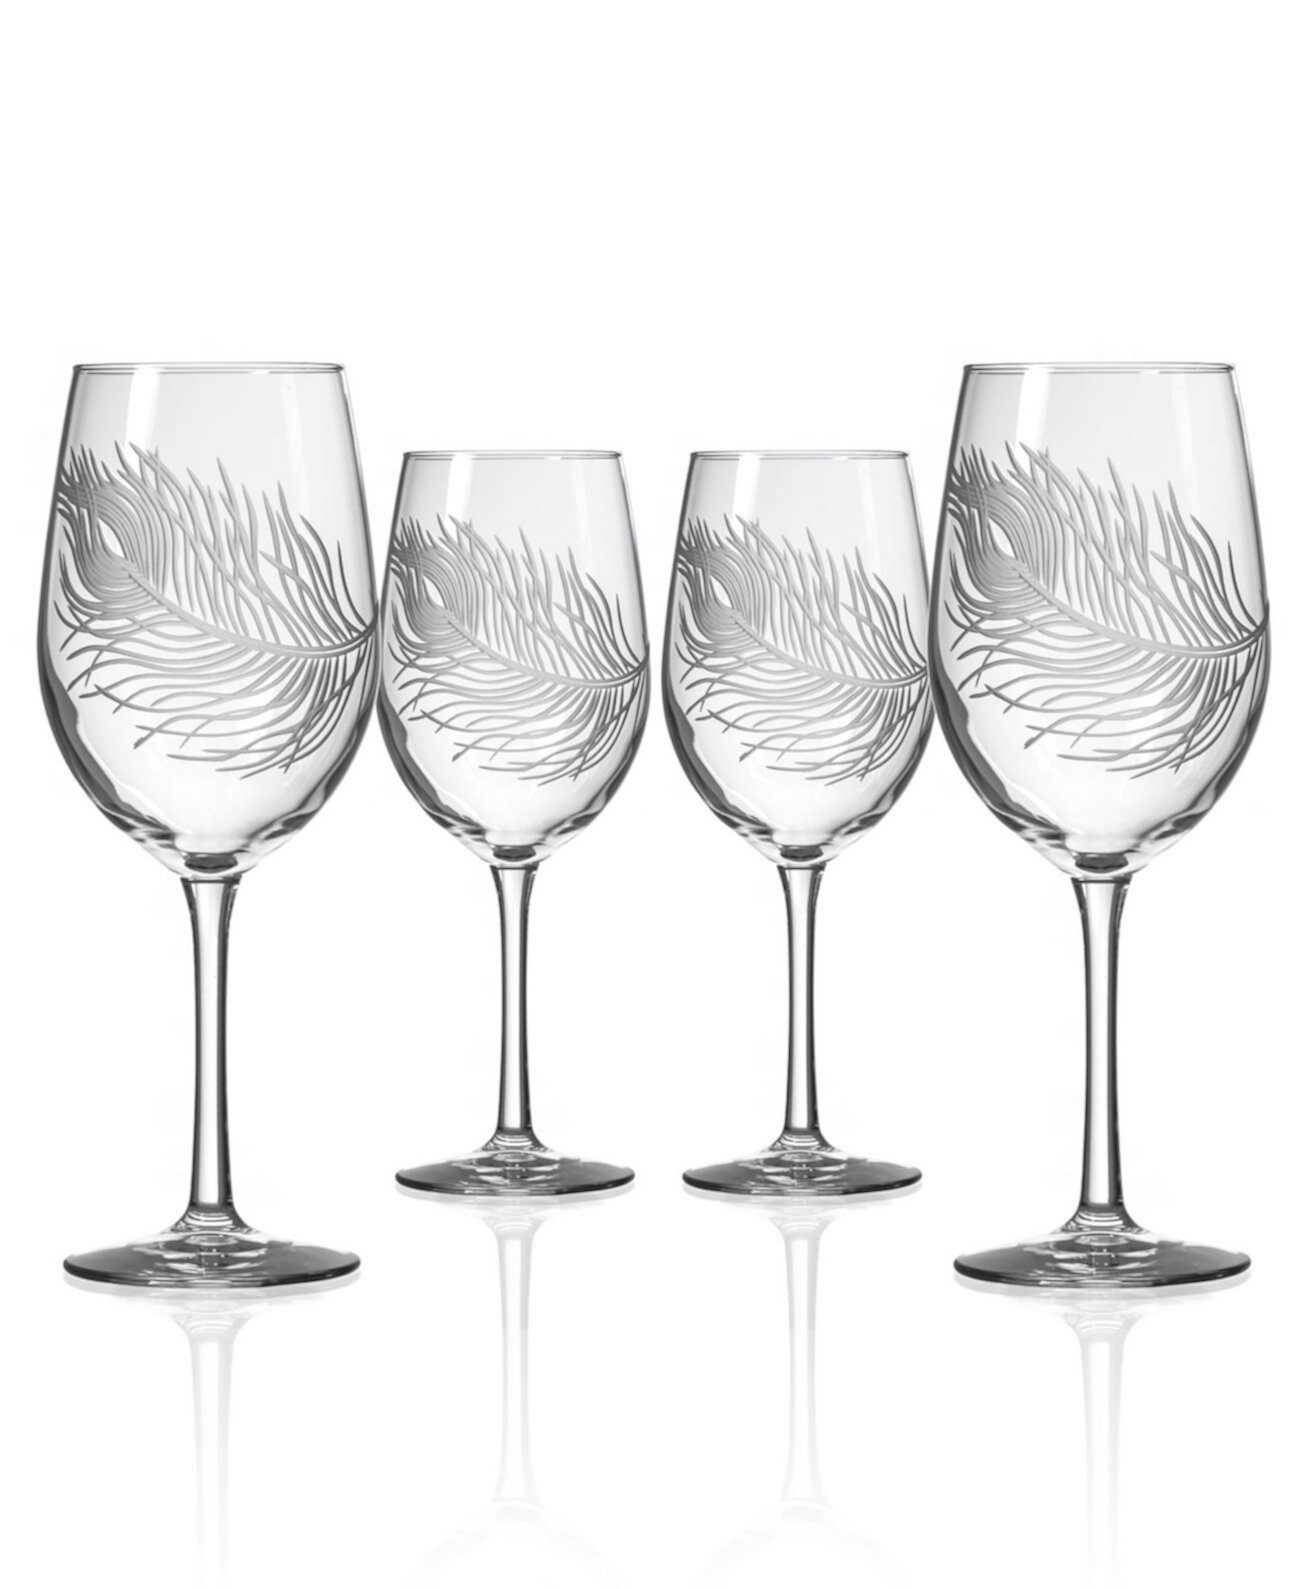 Белое вино павлина 12 унций - набор из 4 бокалов Rolf Glass